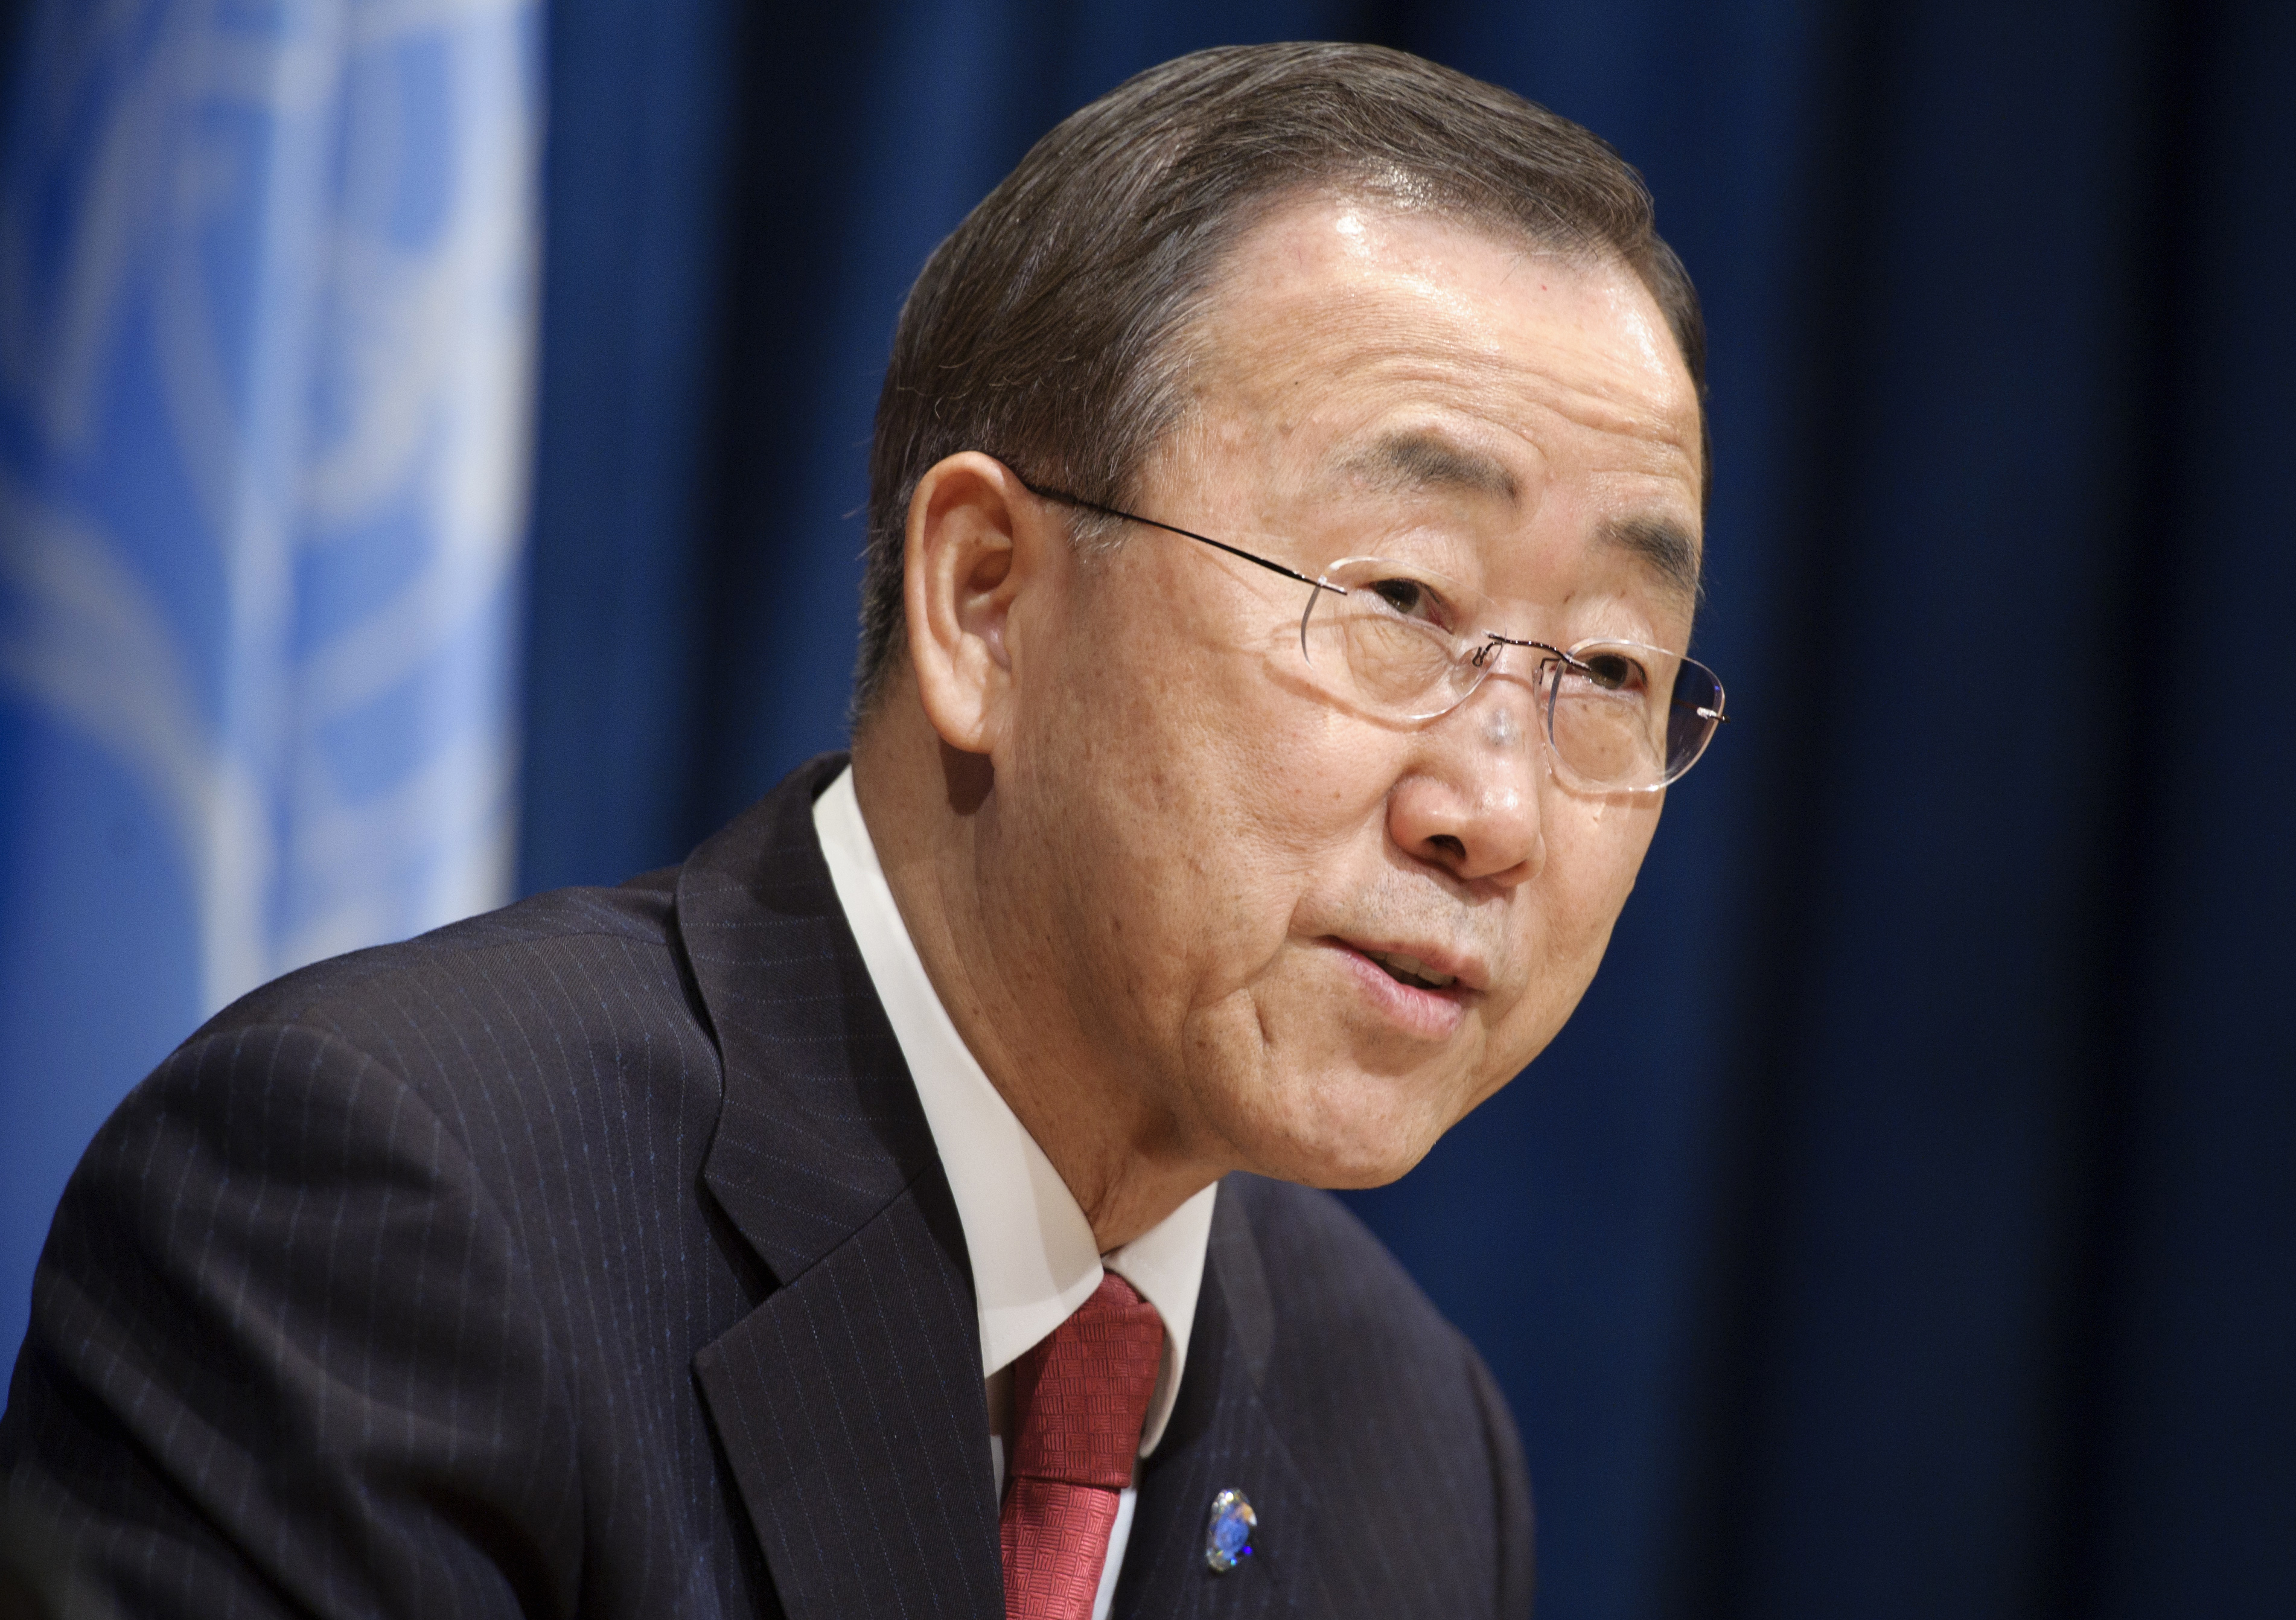 Secretary General Ban Ki-moon's